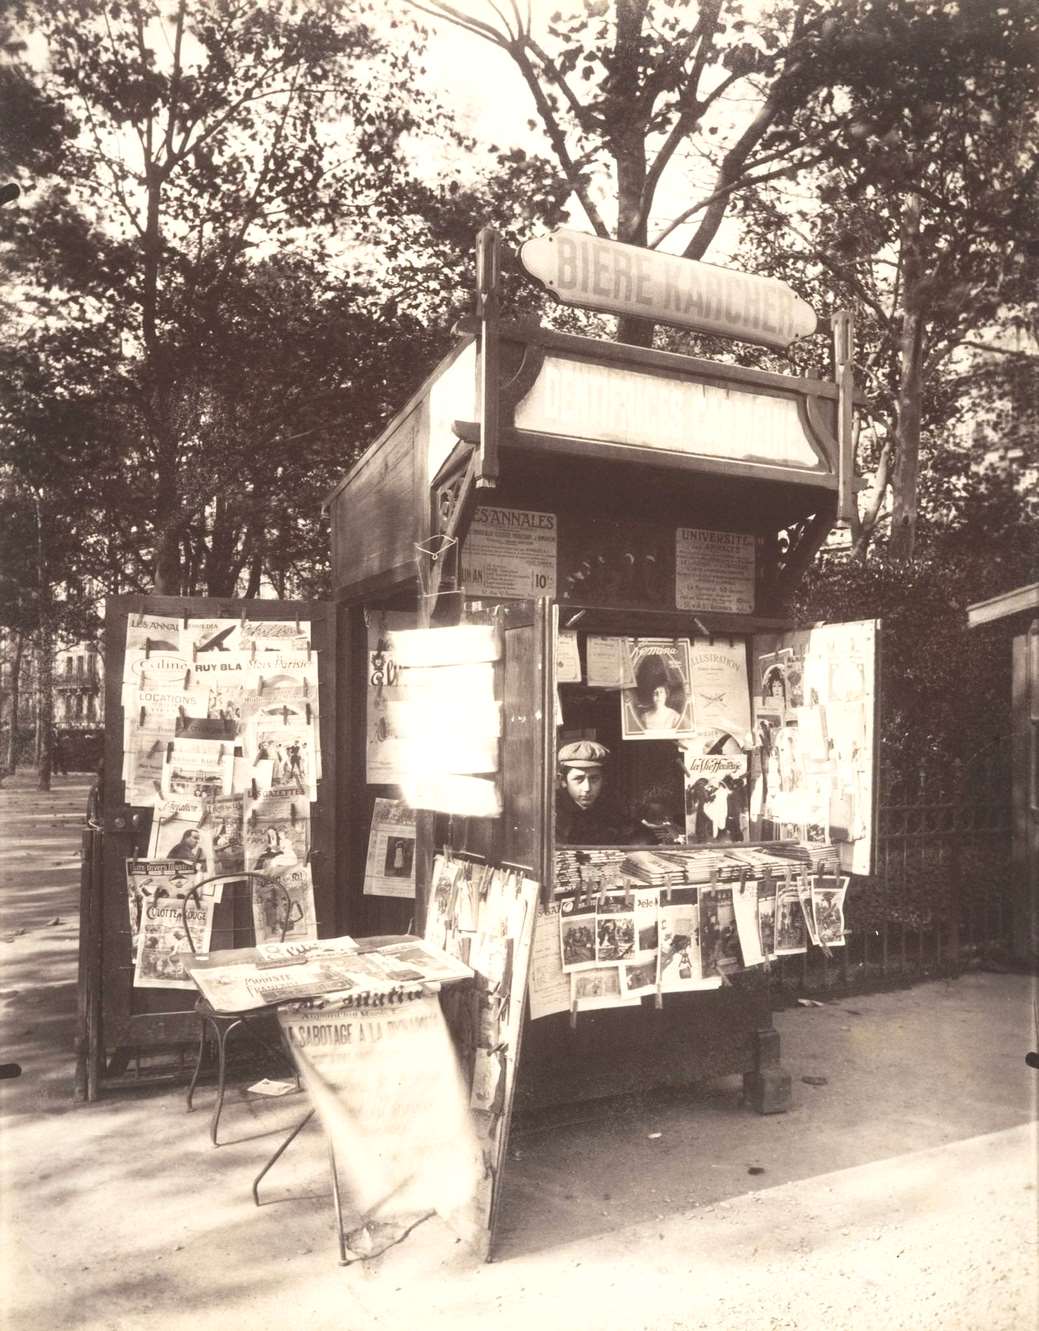 Boutique Journaux, Rue de Sevres, Paris, 1910